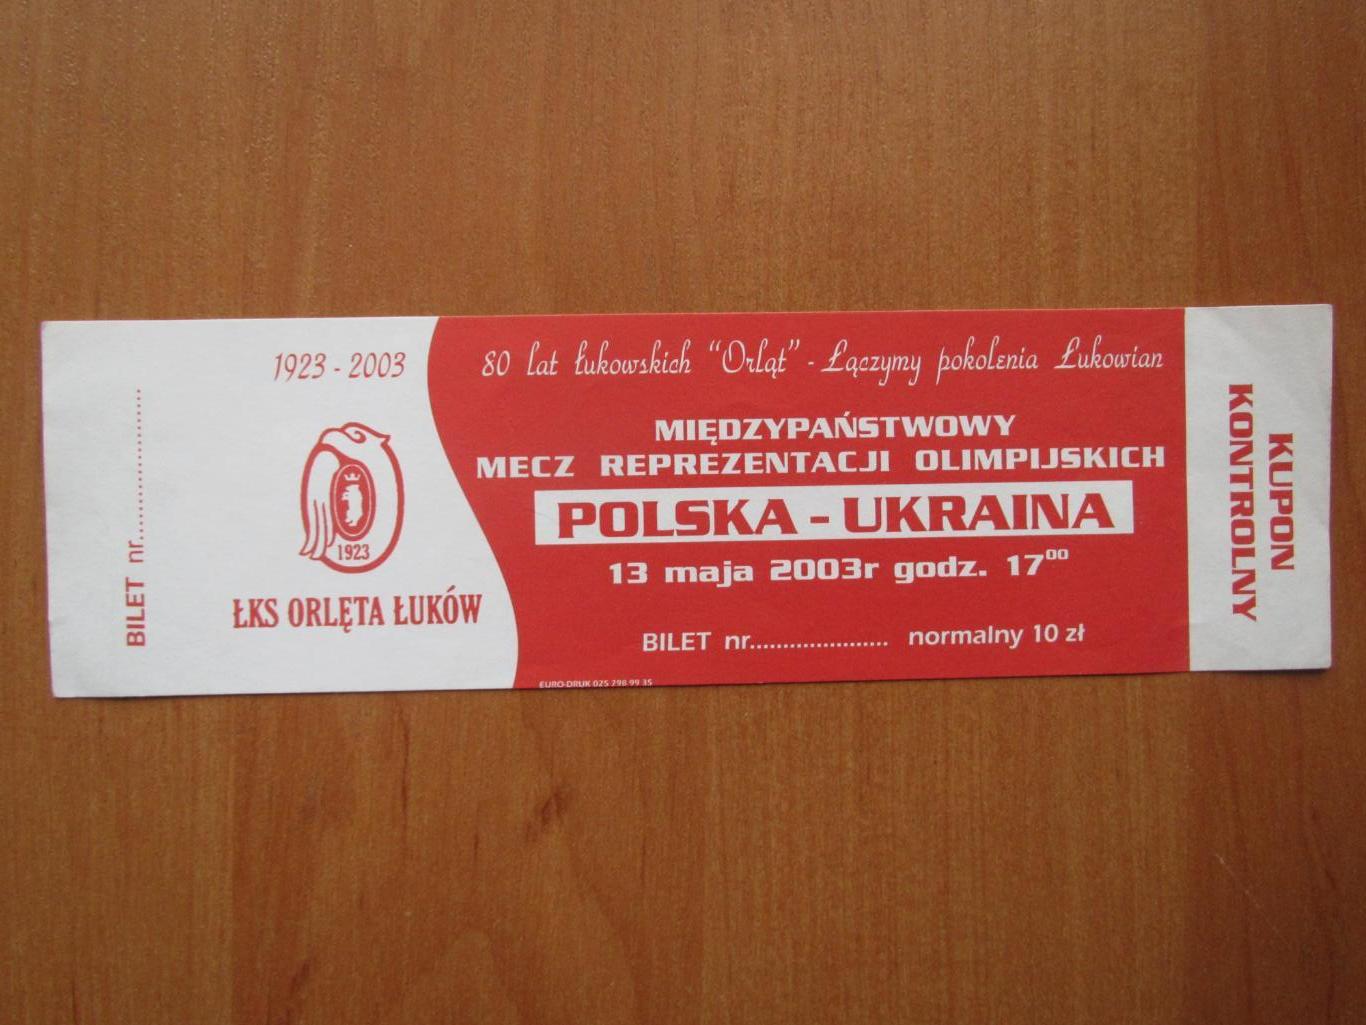 Билет Польша-Украина 13.05.2003 (молодежне сборные)